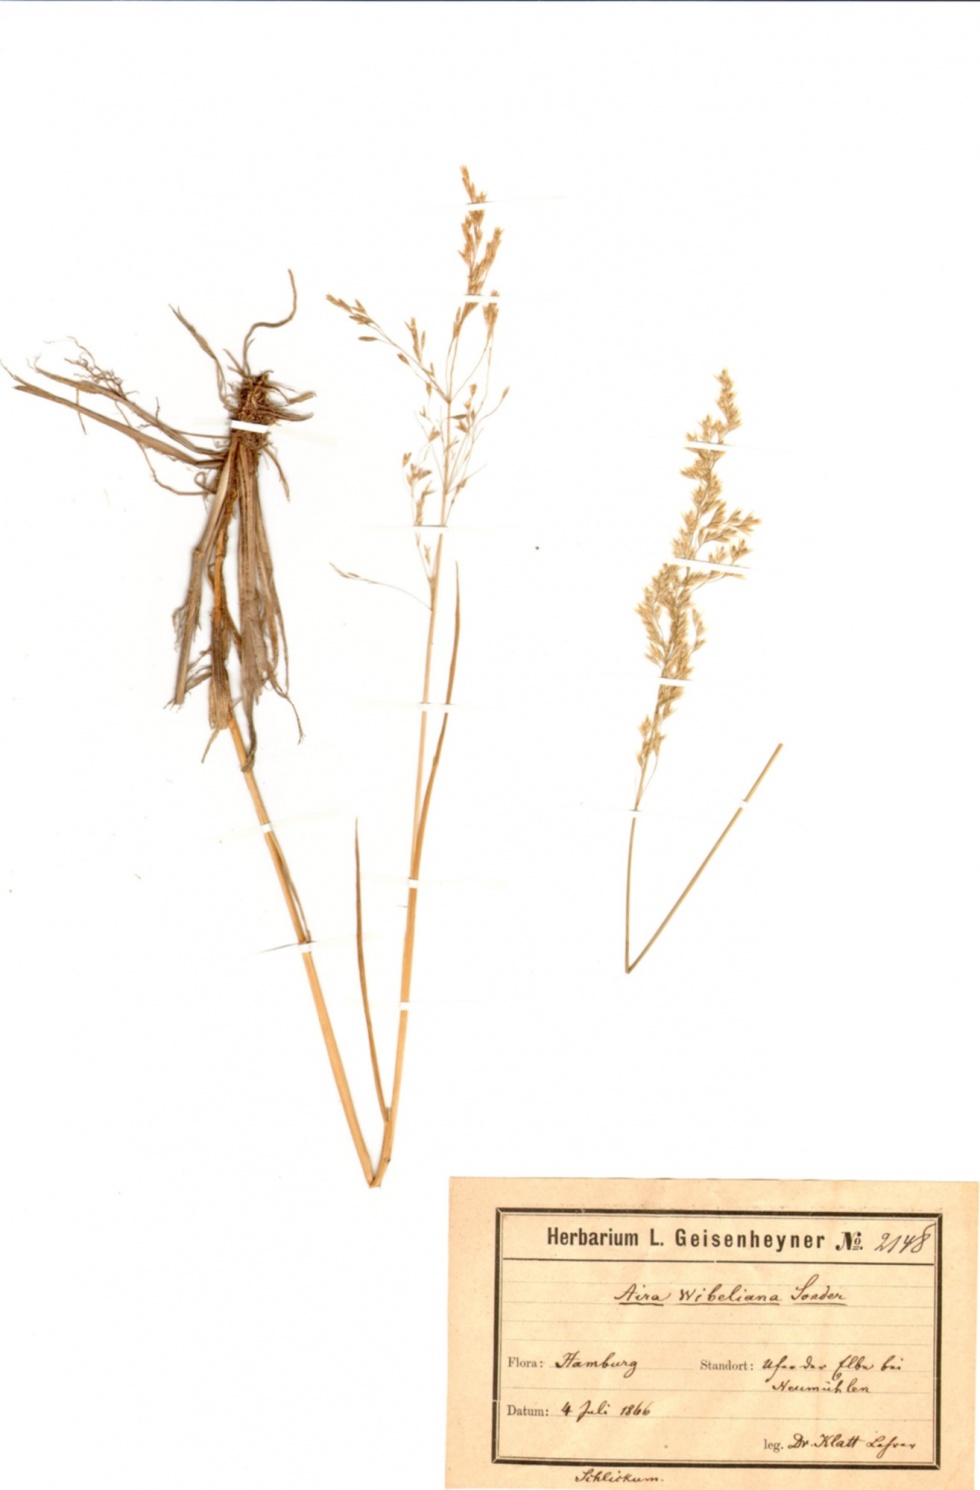 Elb-Rasen-Schmiele - Deschampsia wibeliana (Sond.) Parl. (Naturhistorisches Museum Mainz / Landessammlung für Naturkunde Rheinland-Pfalz CC BY-NC-SA)